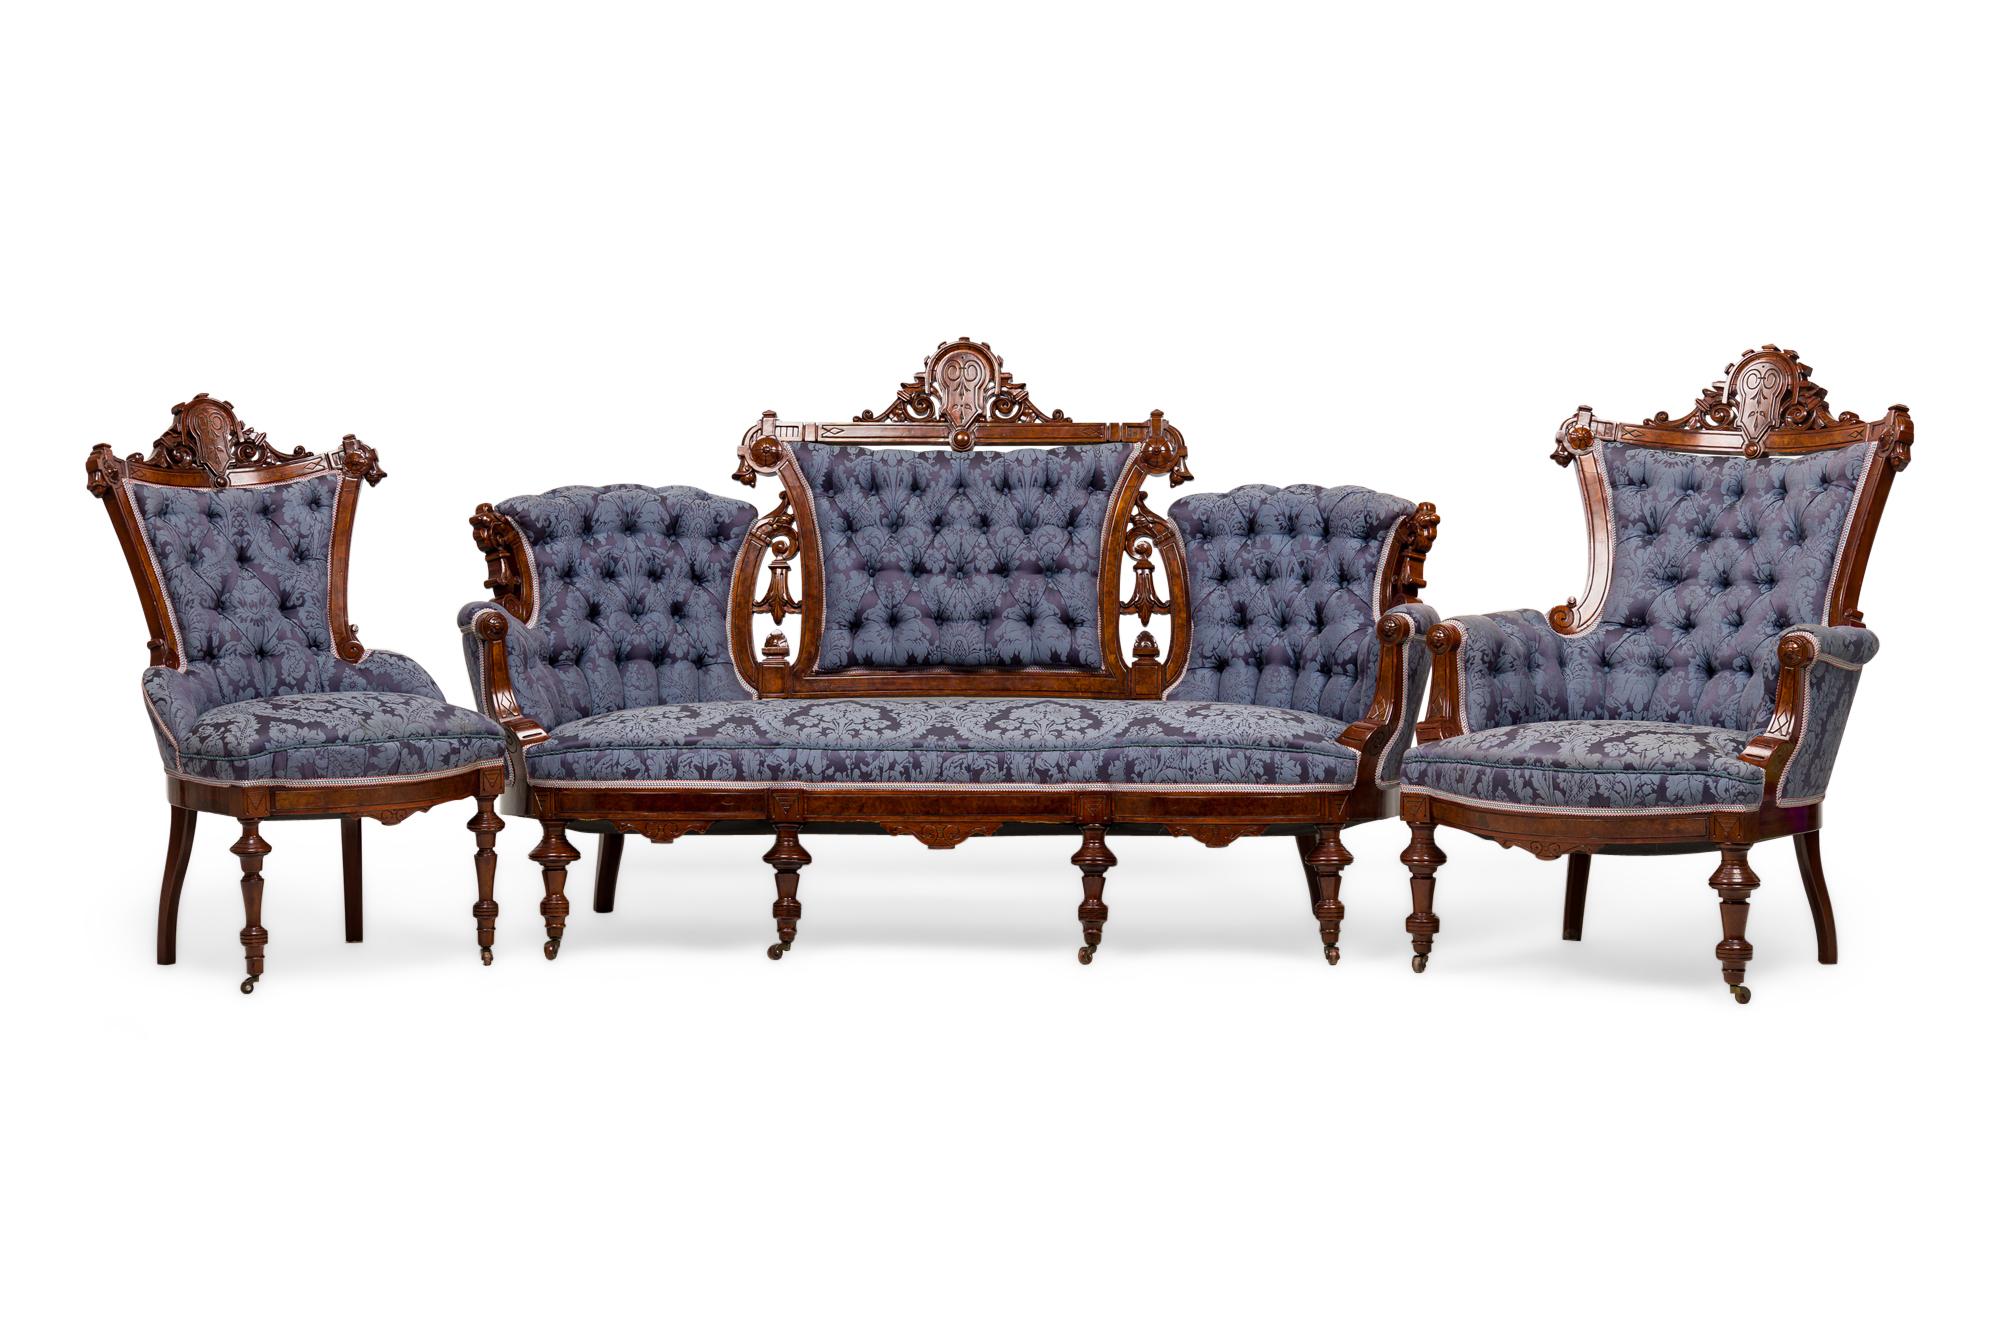 6-teiliges amerikanisch-viktorianisches Wohnzimmer-Salon-Set, bestehend aus einem Sofa, einem Sessel und 4 Beistellstühlen mit geschnitzten Mahagoni-Rahmen mit Wappengiebeln und gedrechselten Beinen, gepolstert in einem zweifarbigen blauen Damast